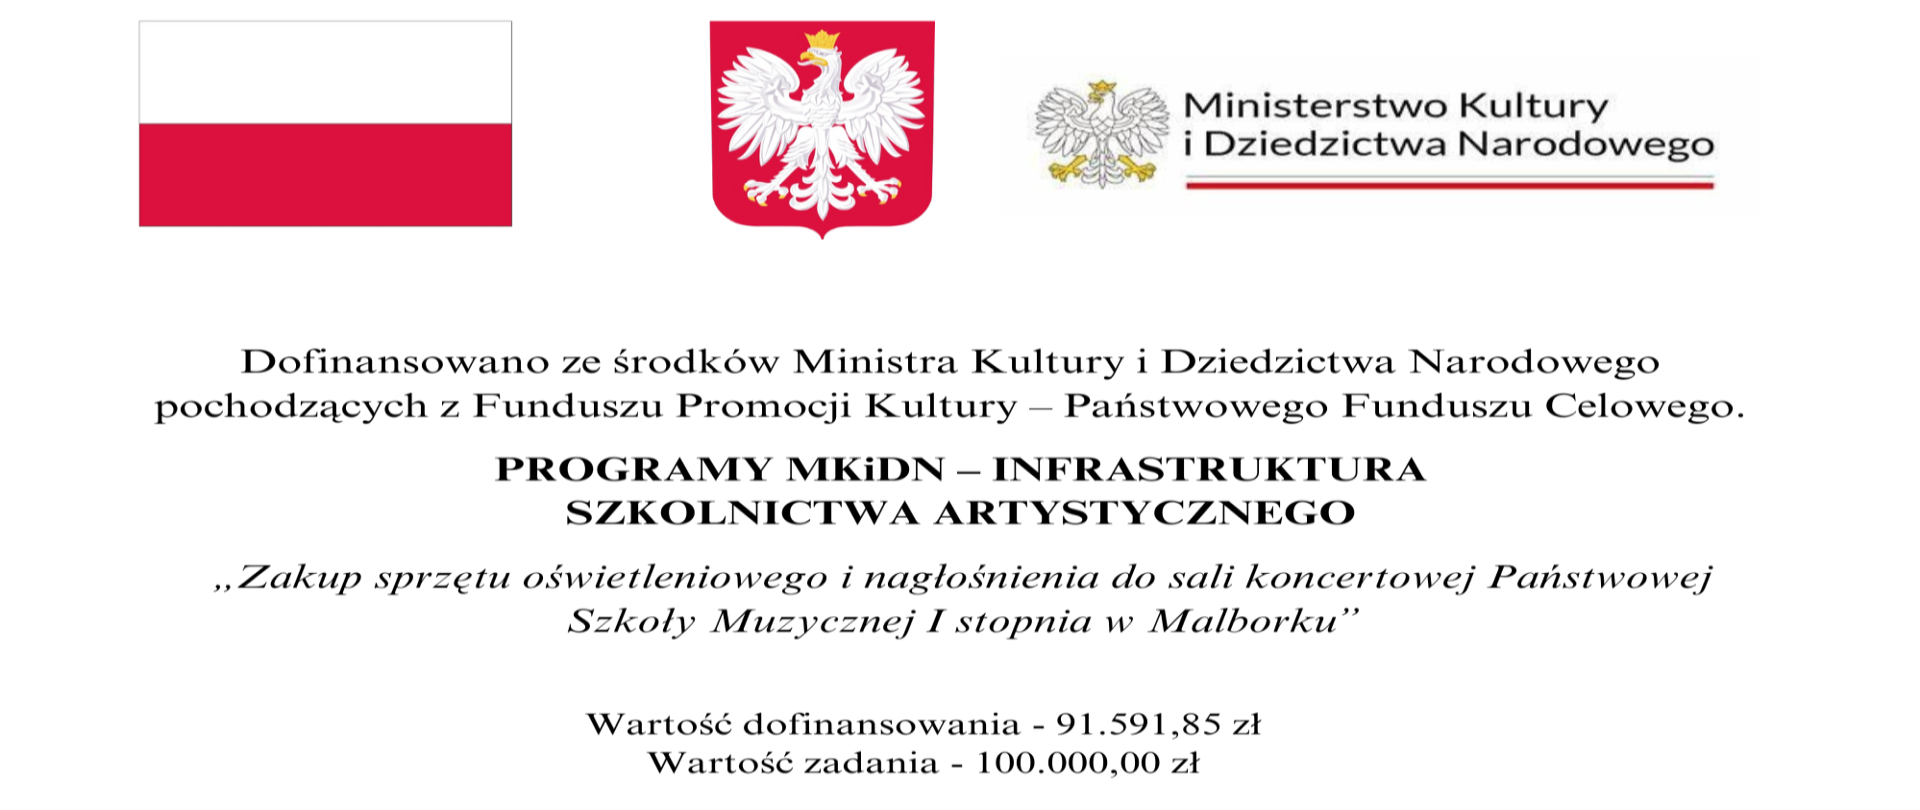 Biała tablica z flagą Polski, godłem i logo MKIDN z informacją o dofinansowaniu w programie MKiDN